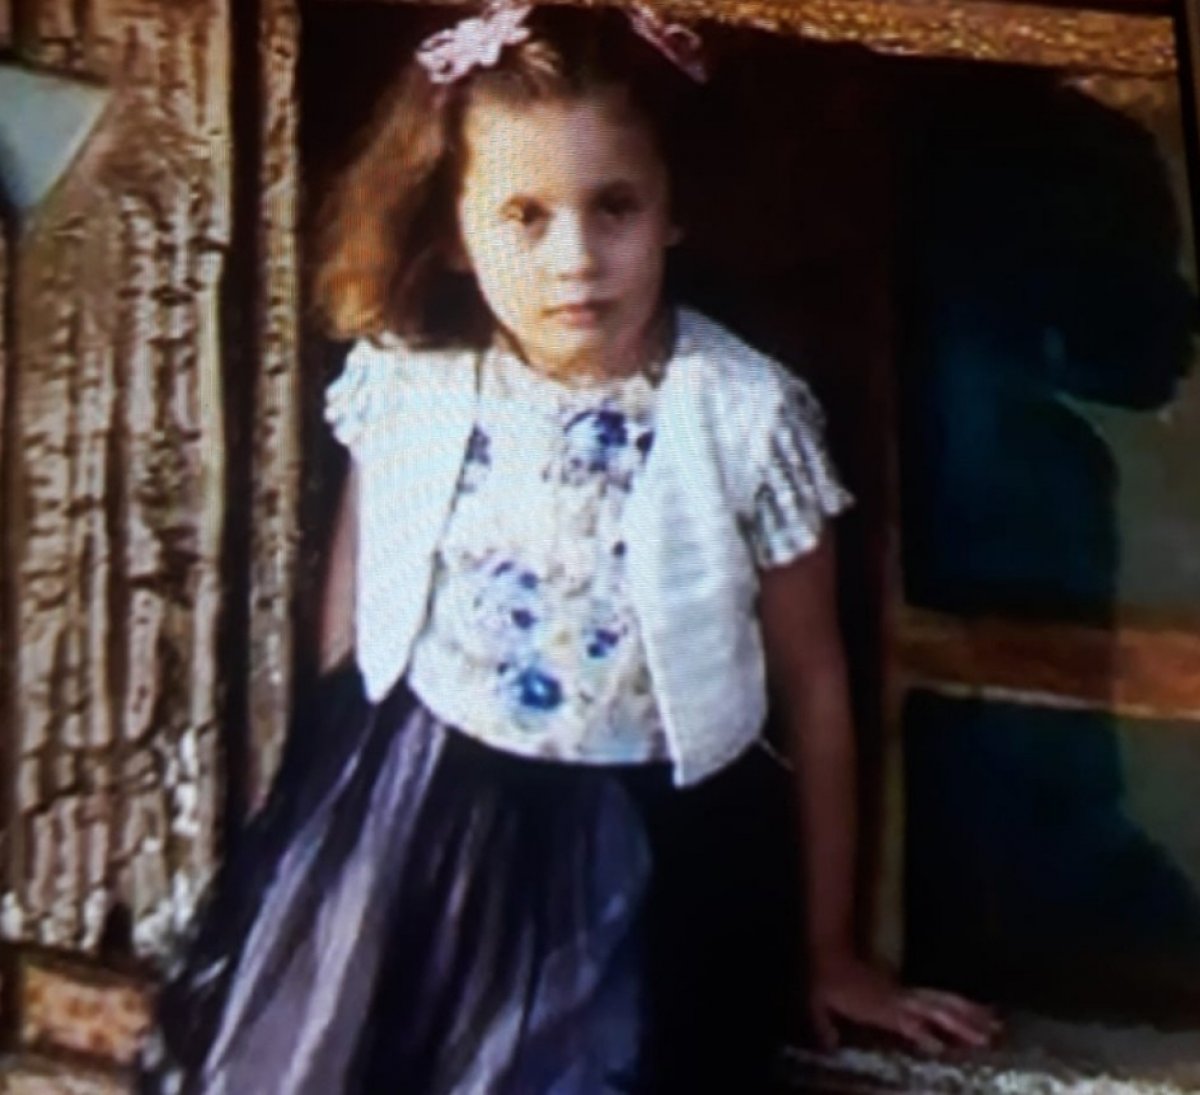 Gaziantep'te 4 yıl önce ölen küçük kızın katili yengesi çıktı